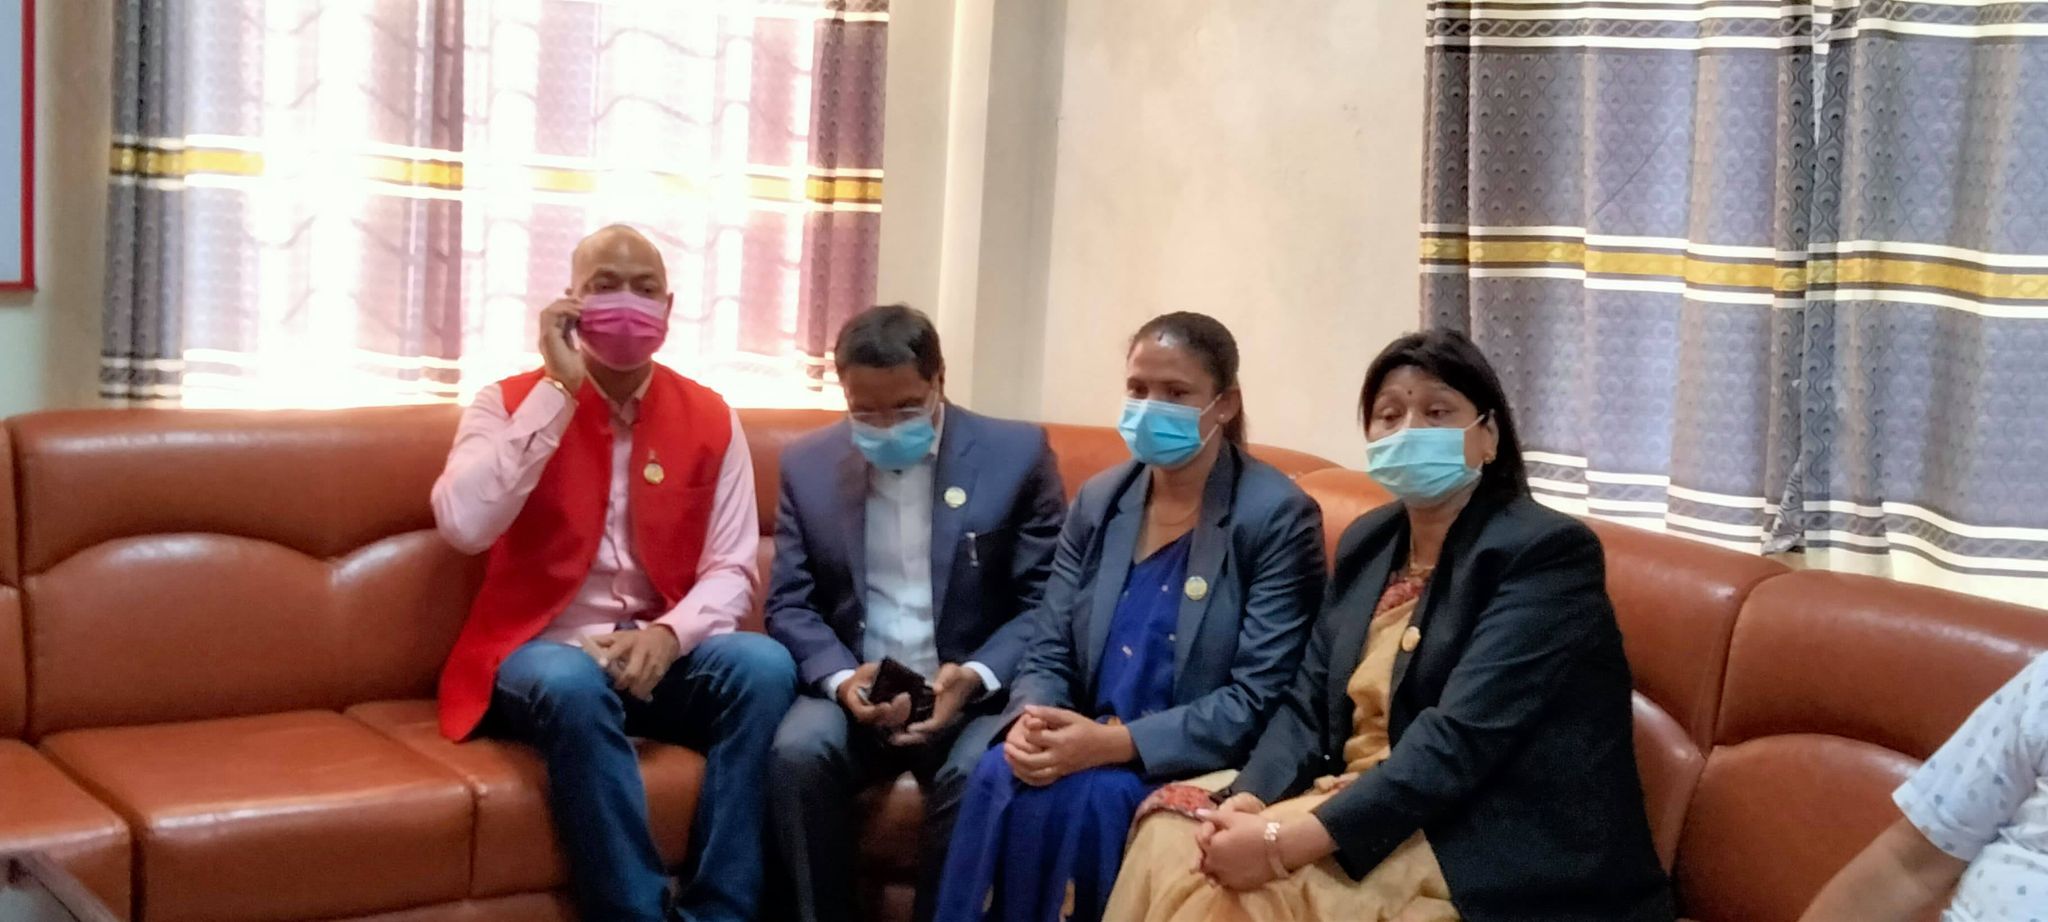 लुम्बिनीमा जसपाको लफडा कायमै : सरकारमा सहभागी मन्त्रीहरुलाई फेरि स्पष्टीकरण